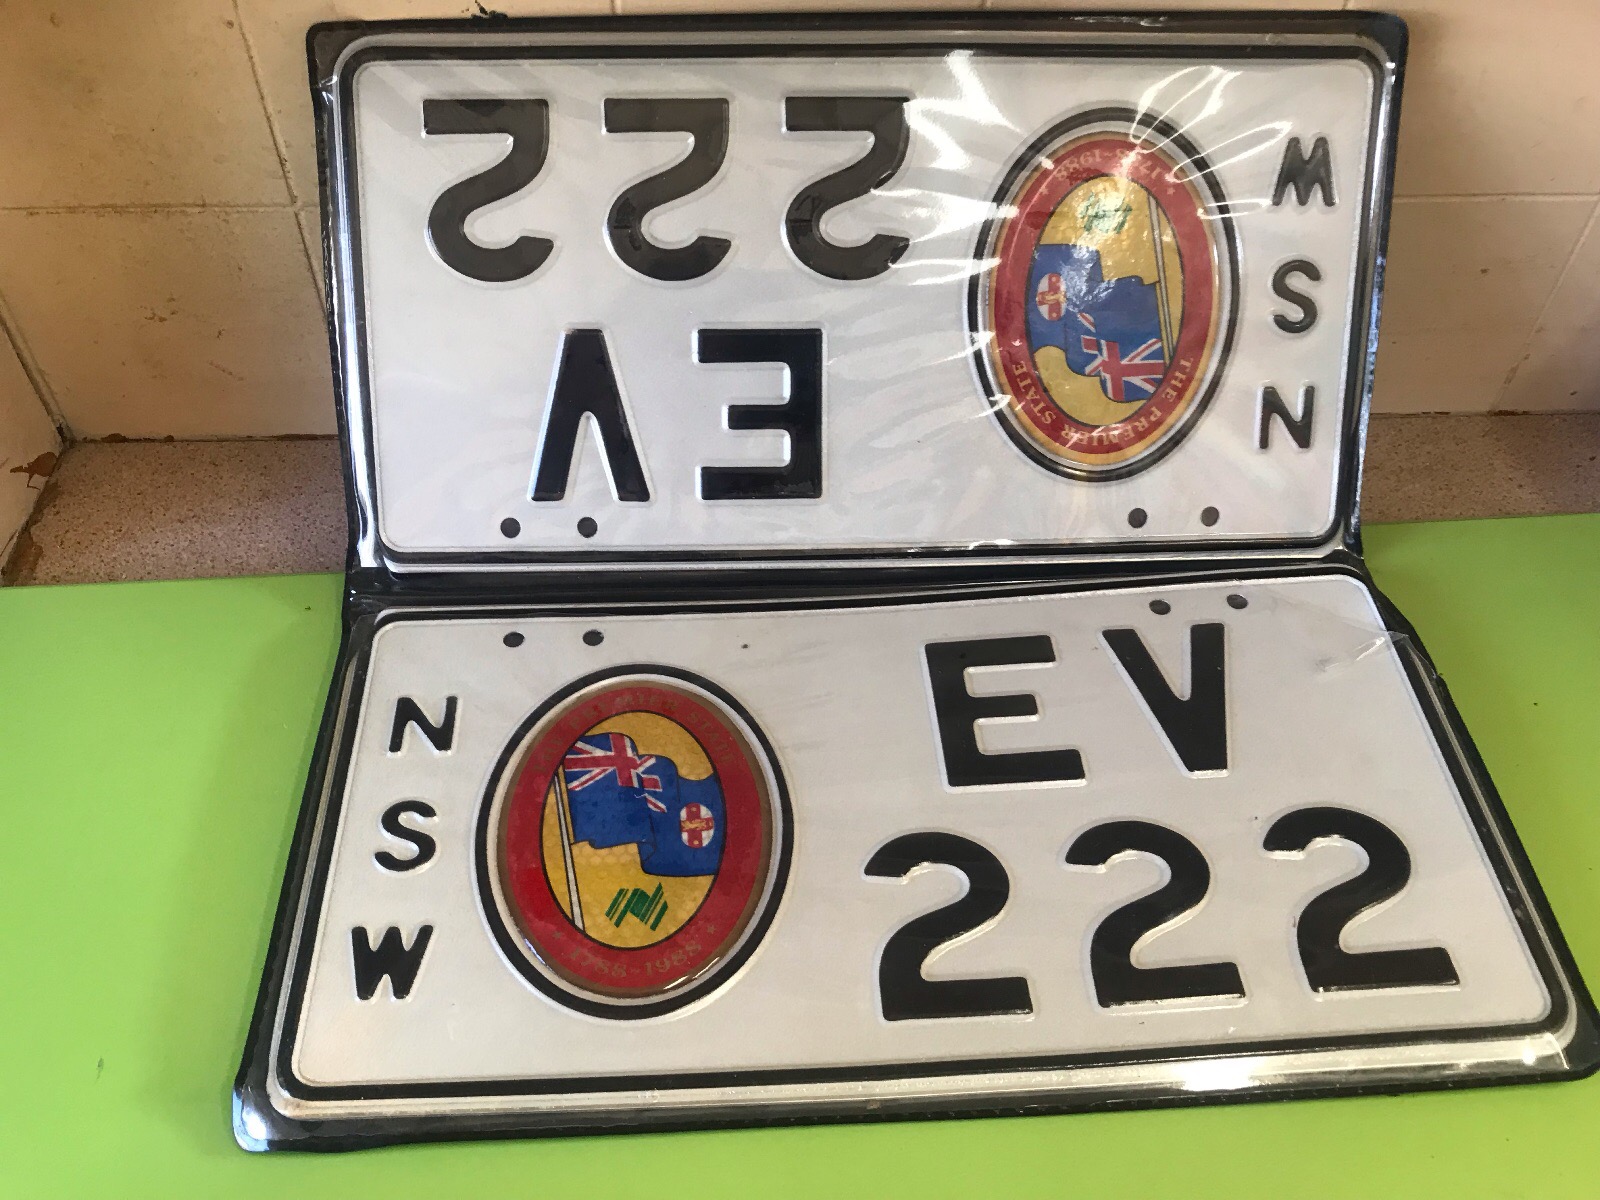 NSW EV222